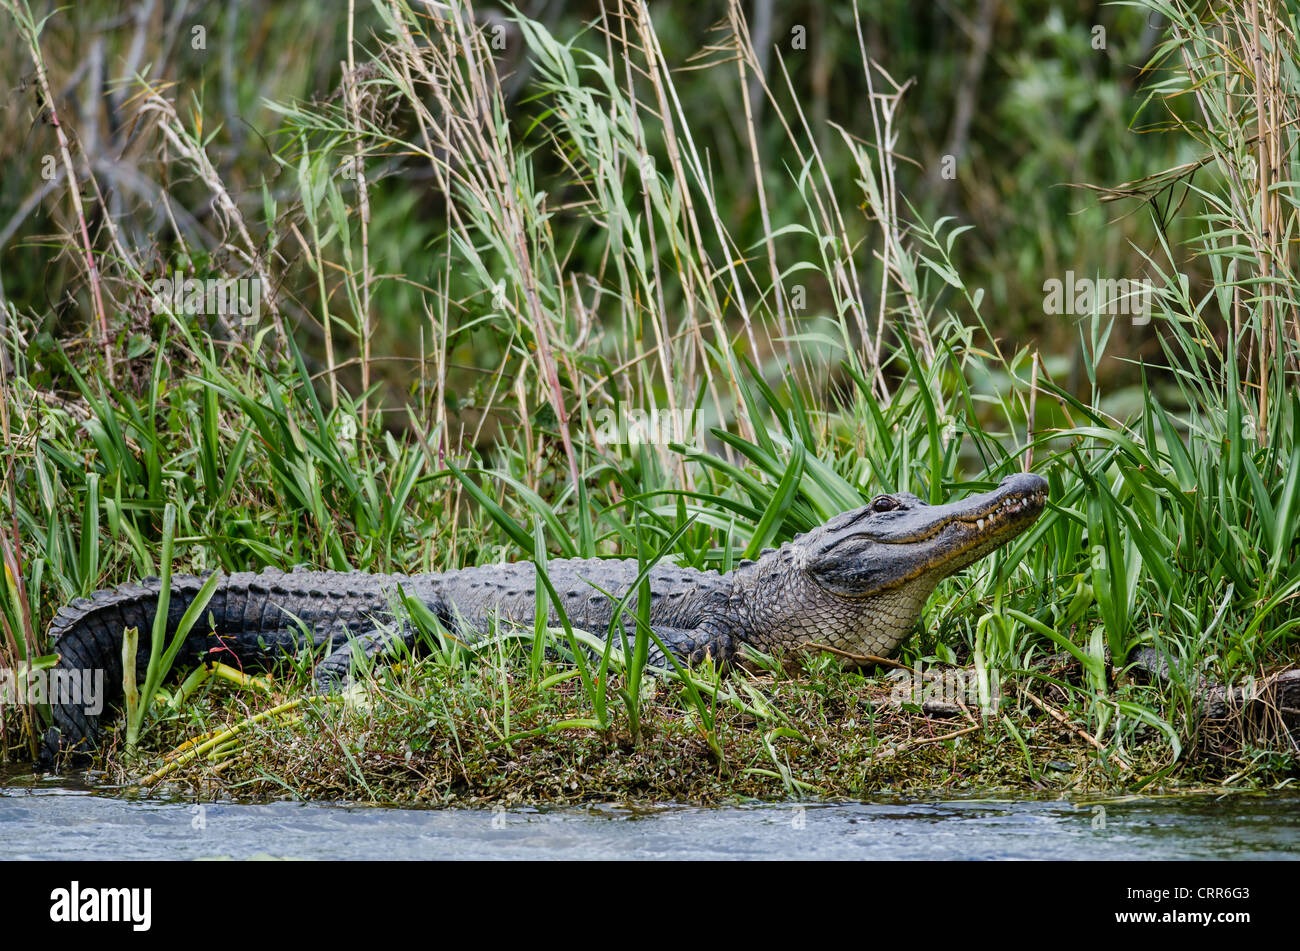 Ein Florida Alligator vom Everglades Nationalpark hebt den Kopf aus einer nachmittags-Nickerchen-Warnung, die viele Wildtiere Zuschauer. Stockfoto